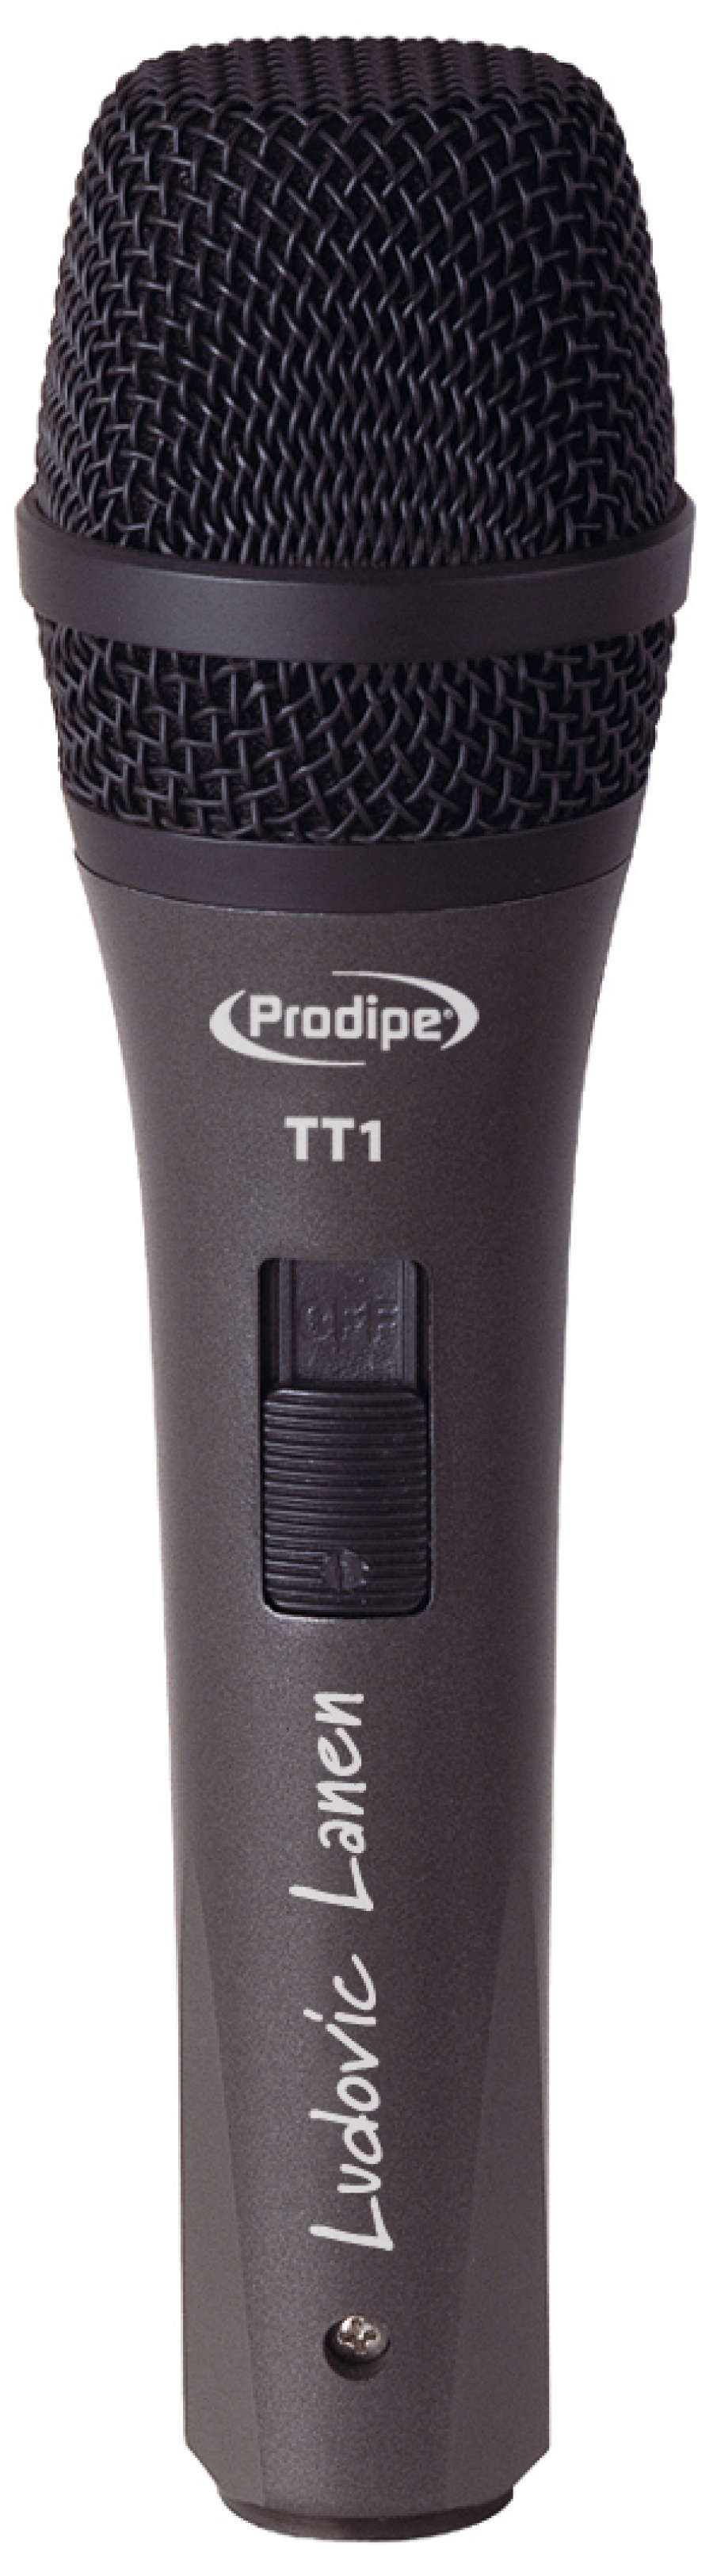 Prodipe TT1 Micro dynamique voix